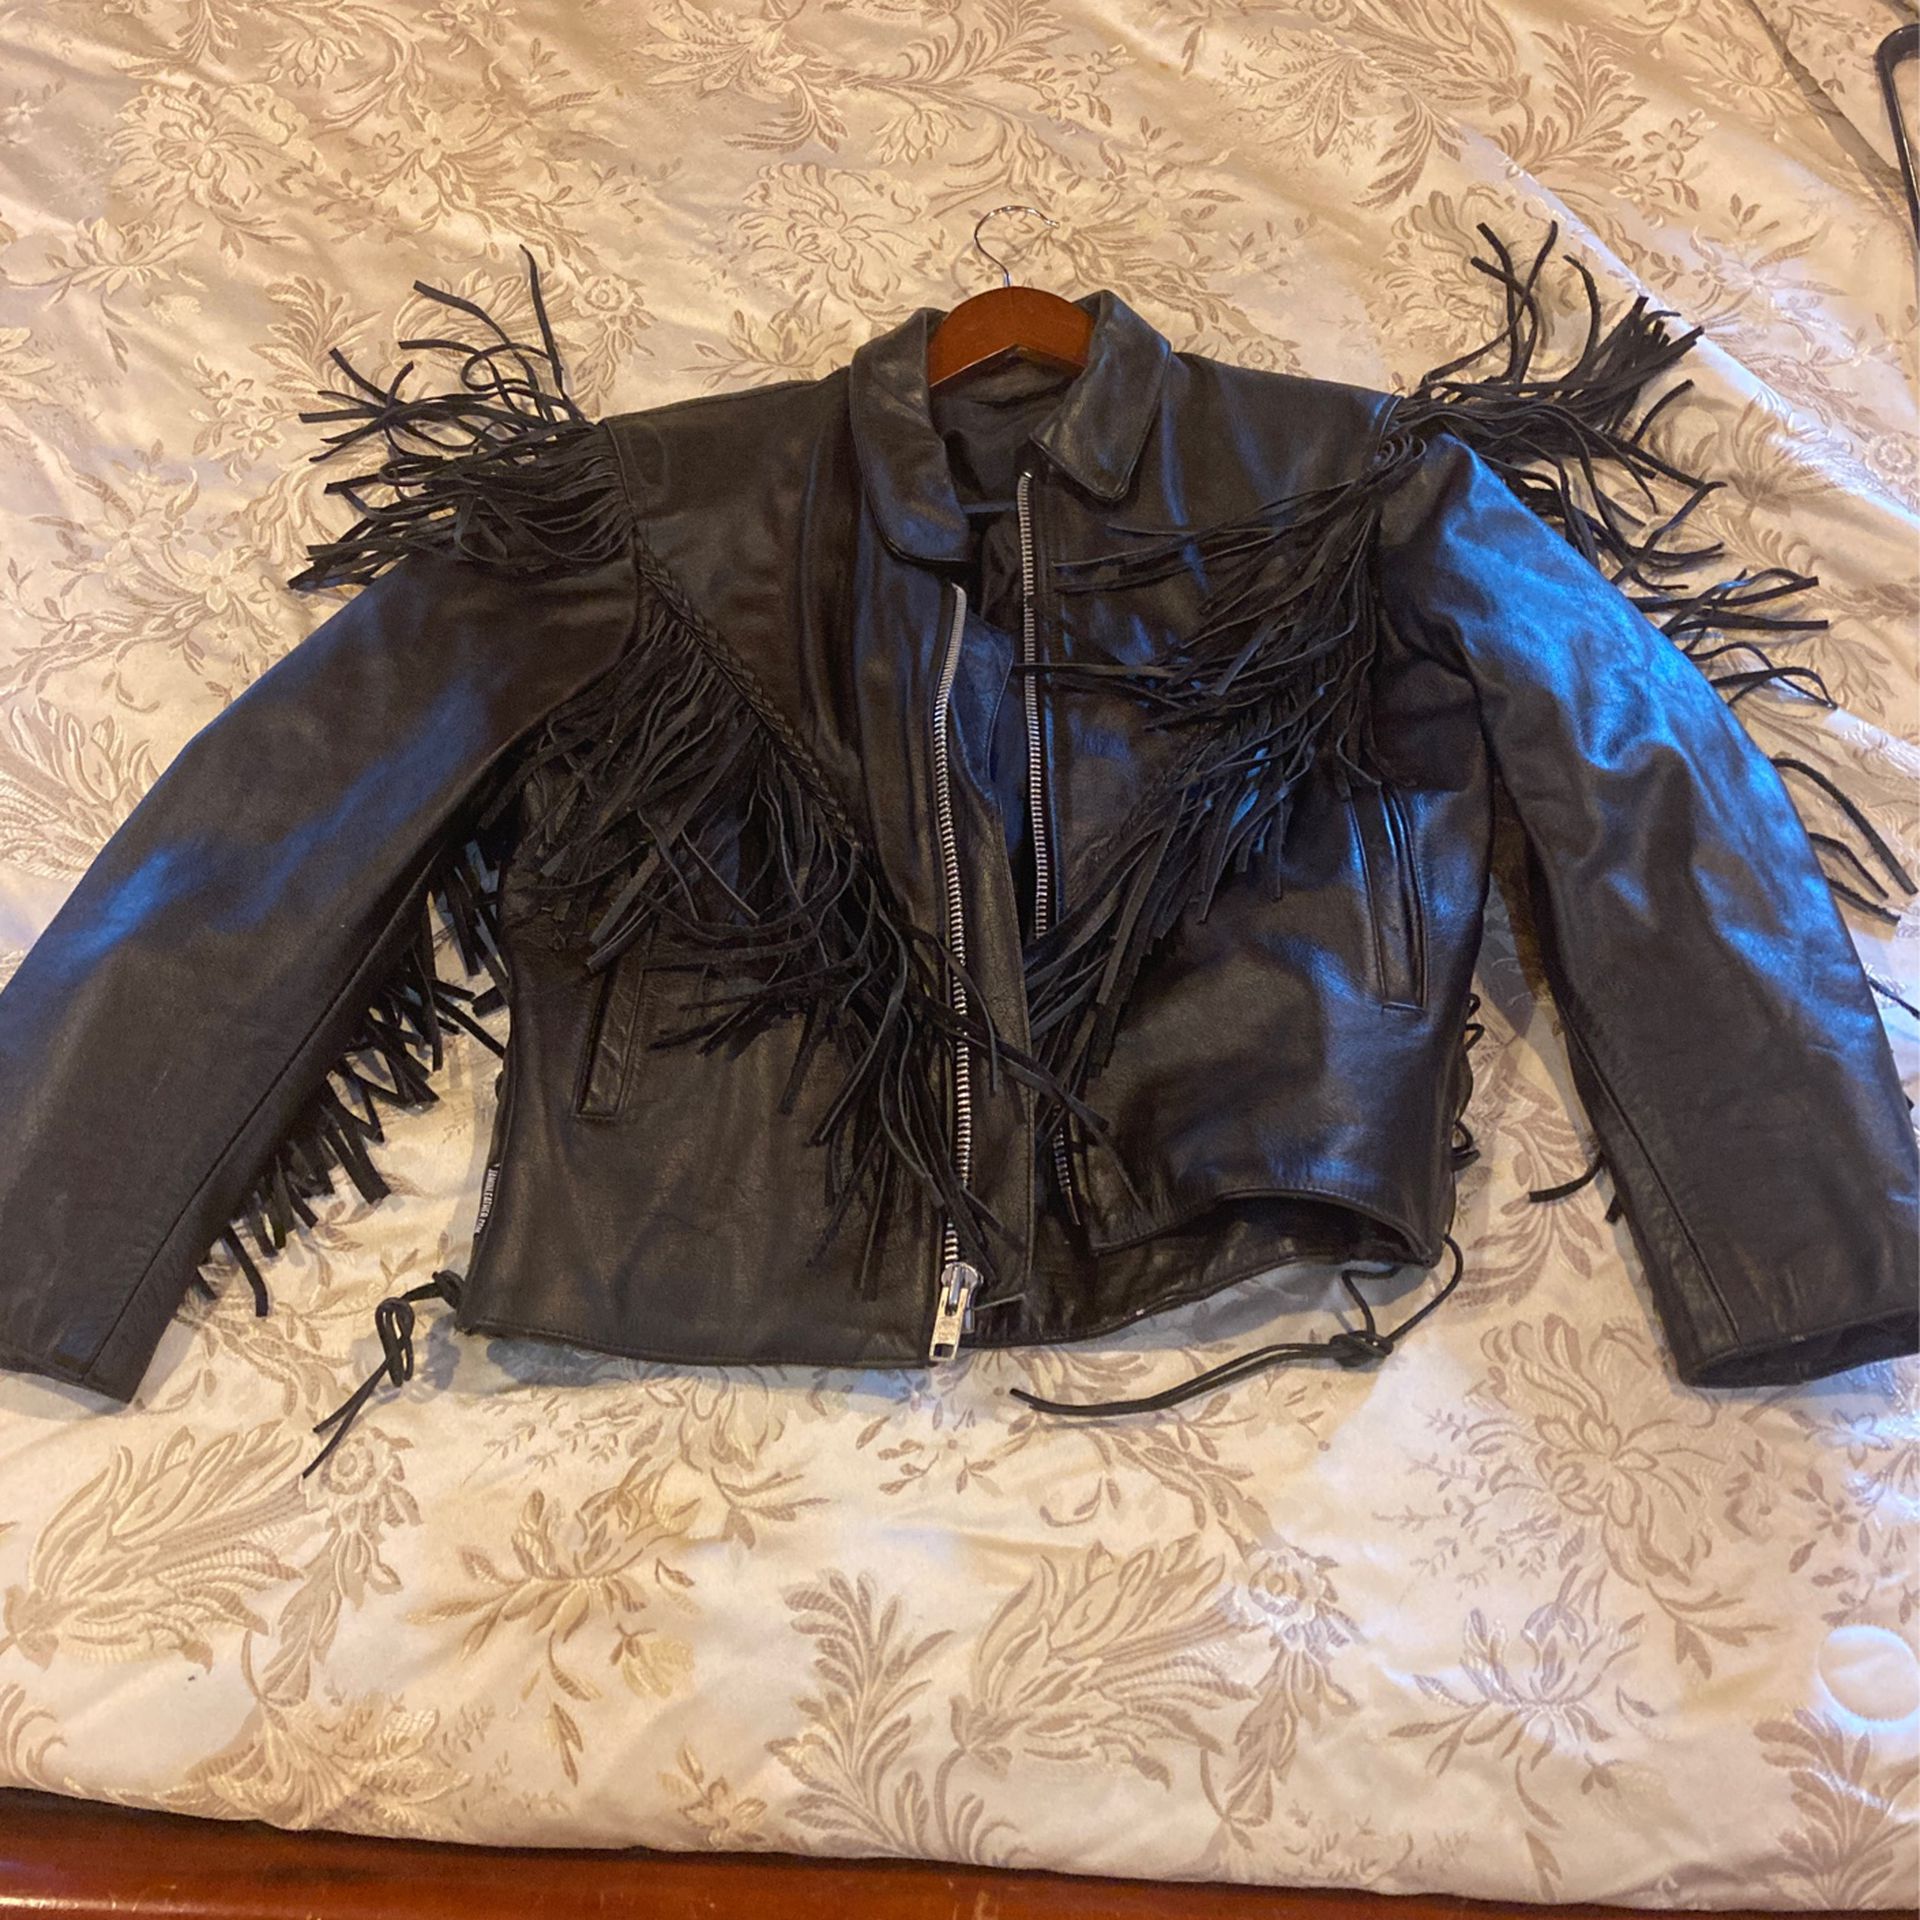 Fringe leather motorcycle jacket size medium